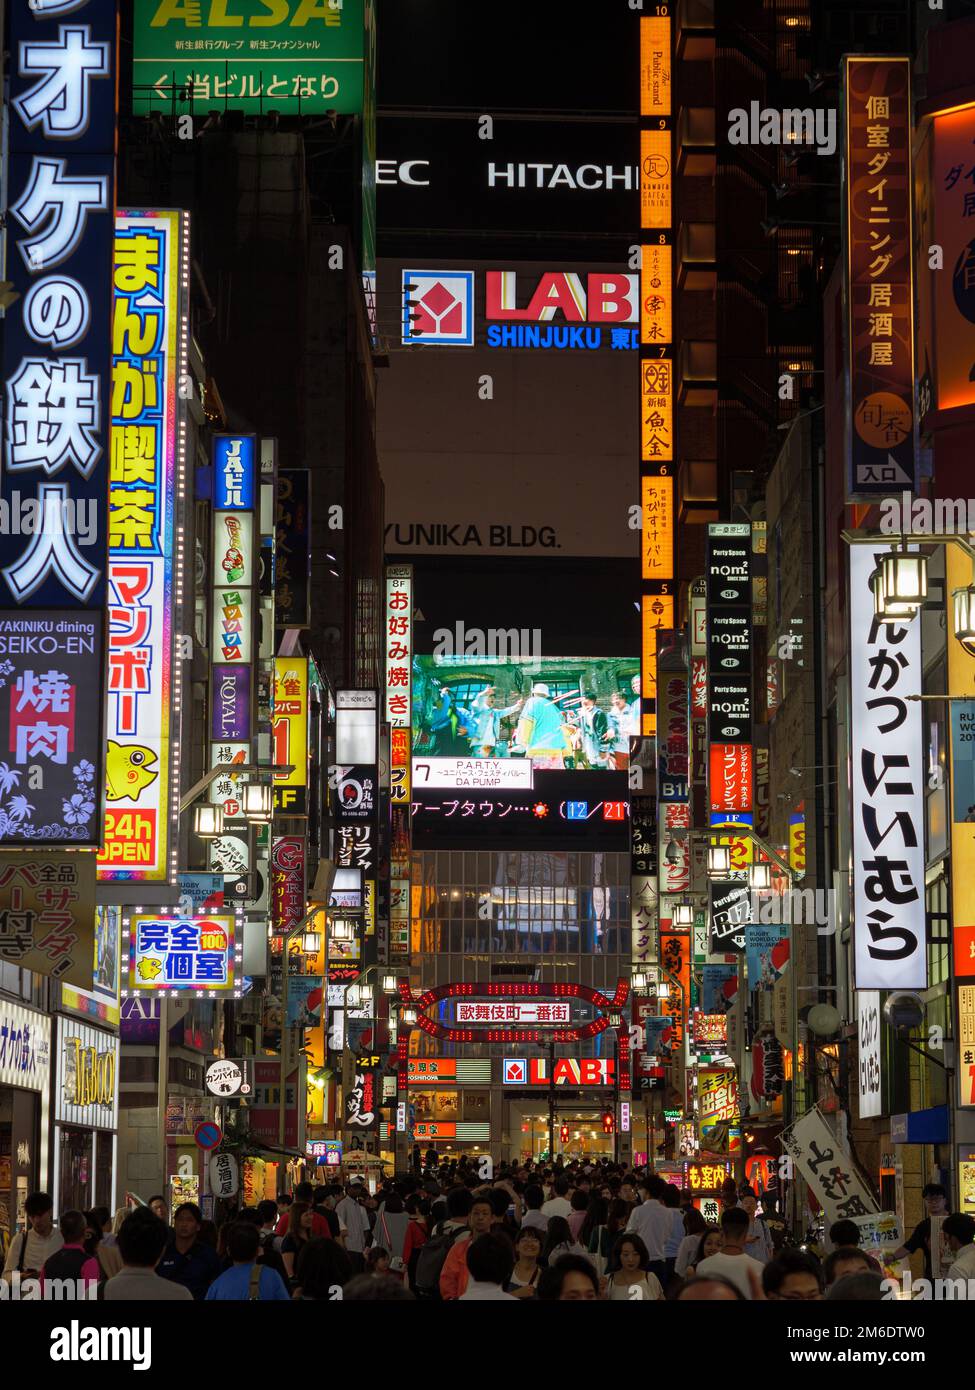 Shinjuku, Japan - 8 9 19: The neon signs of Kabukicho lit up at night in Tokyo Stock Photo